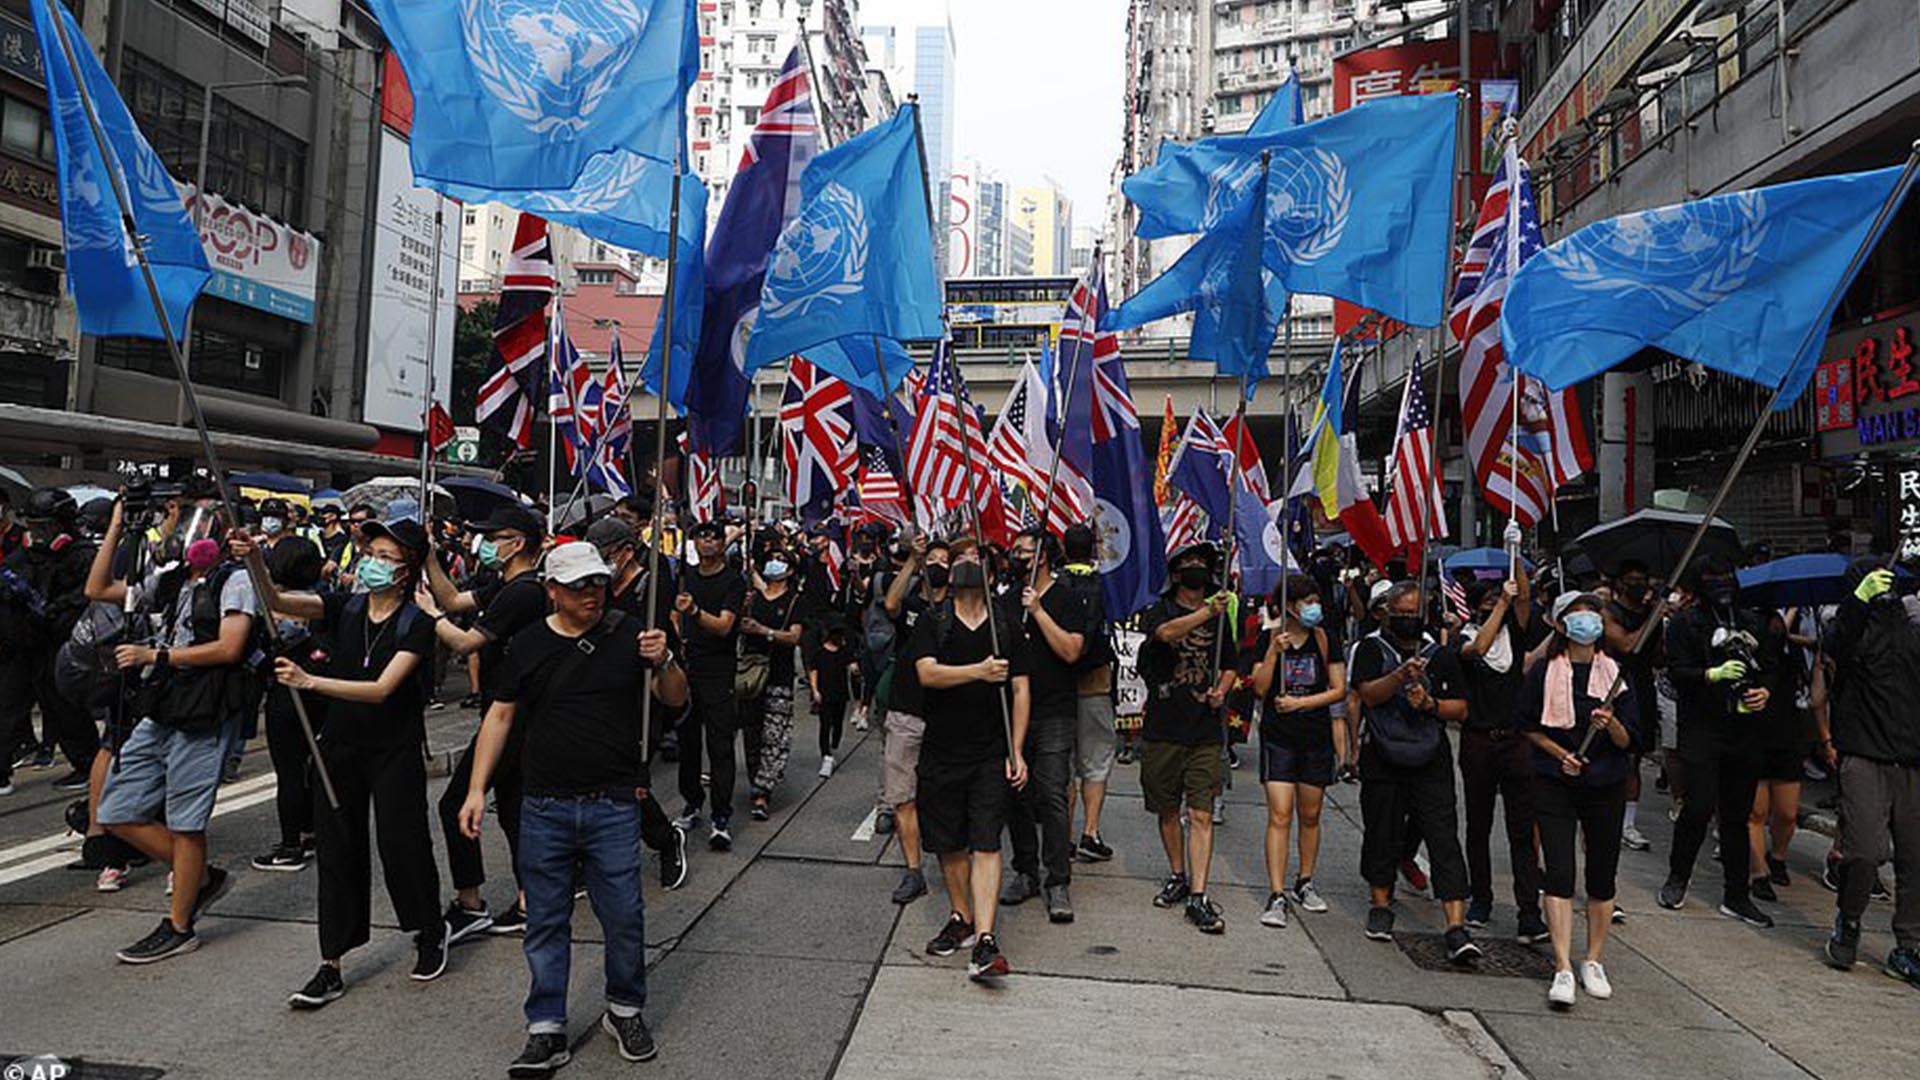 Has Hong Kong’s pro-democracy movement slowed down?